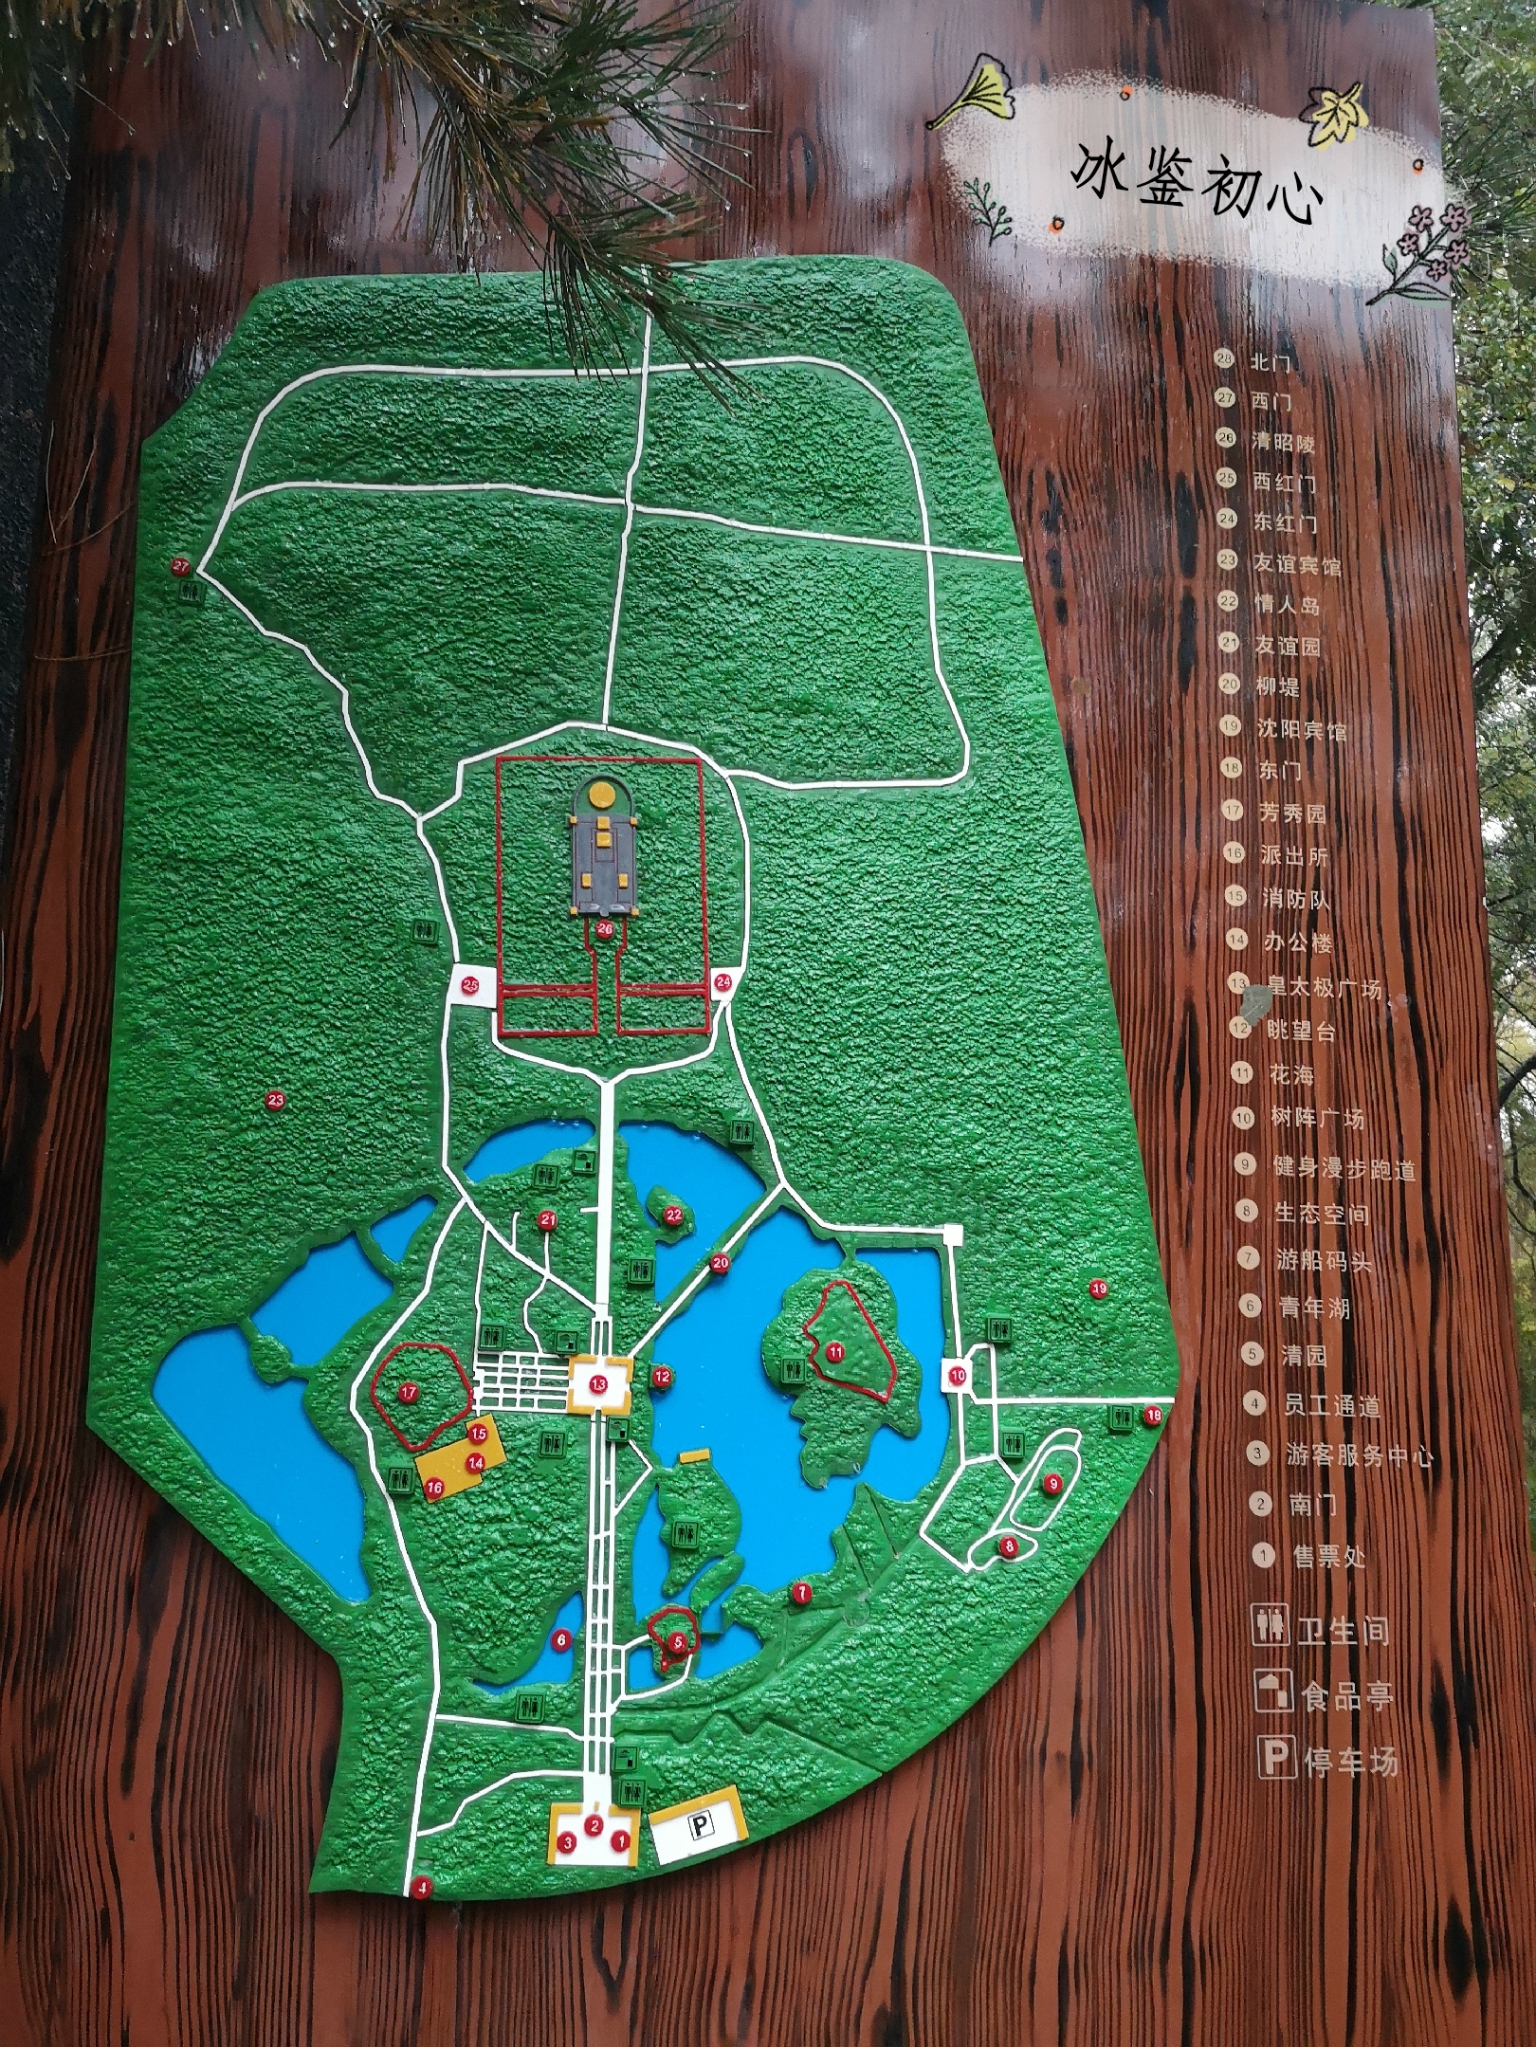 北陵公园地图平面图图片